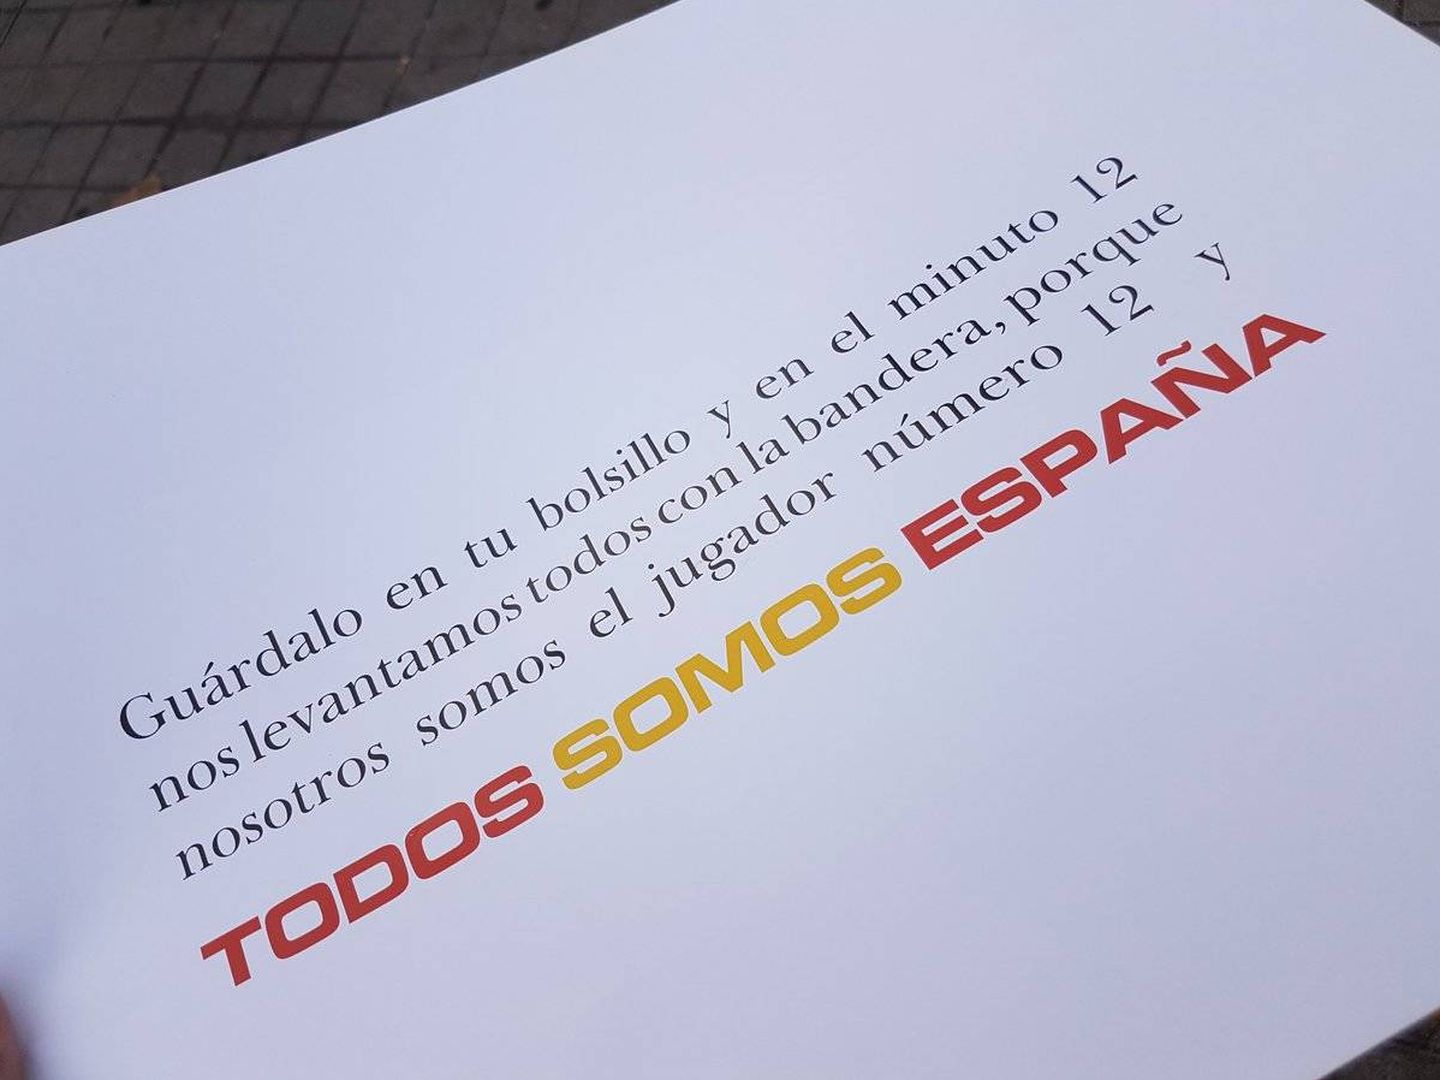 Mensaje en el reverso de la cartulina con la bandera de España